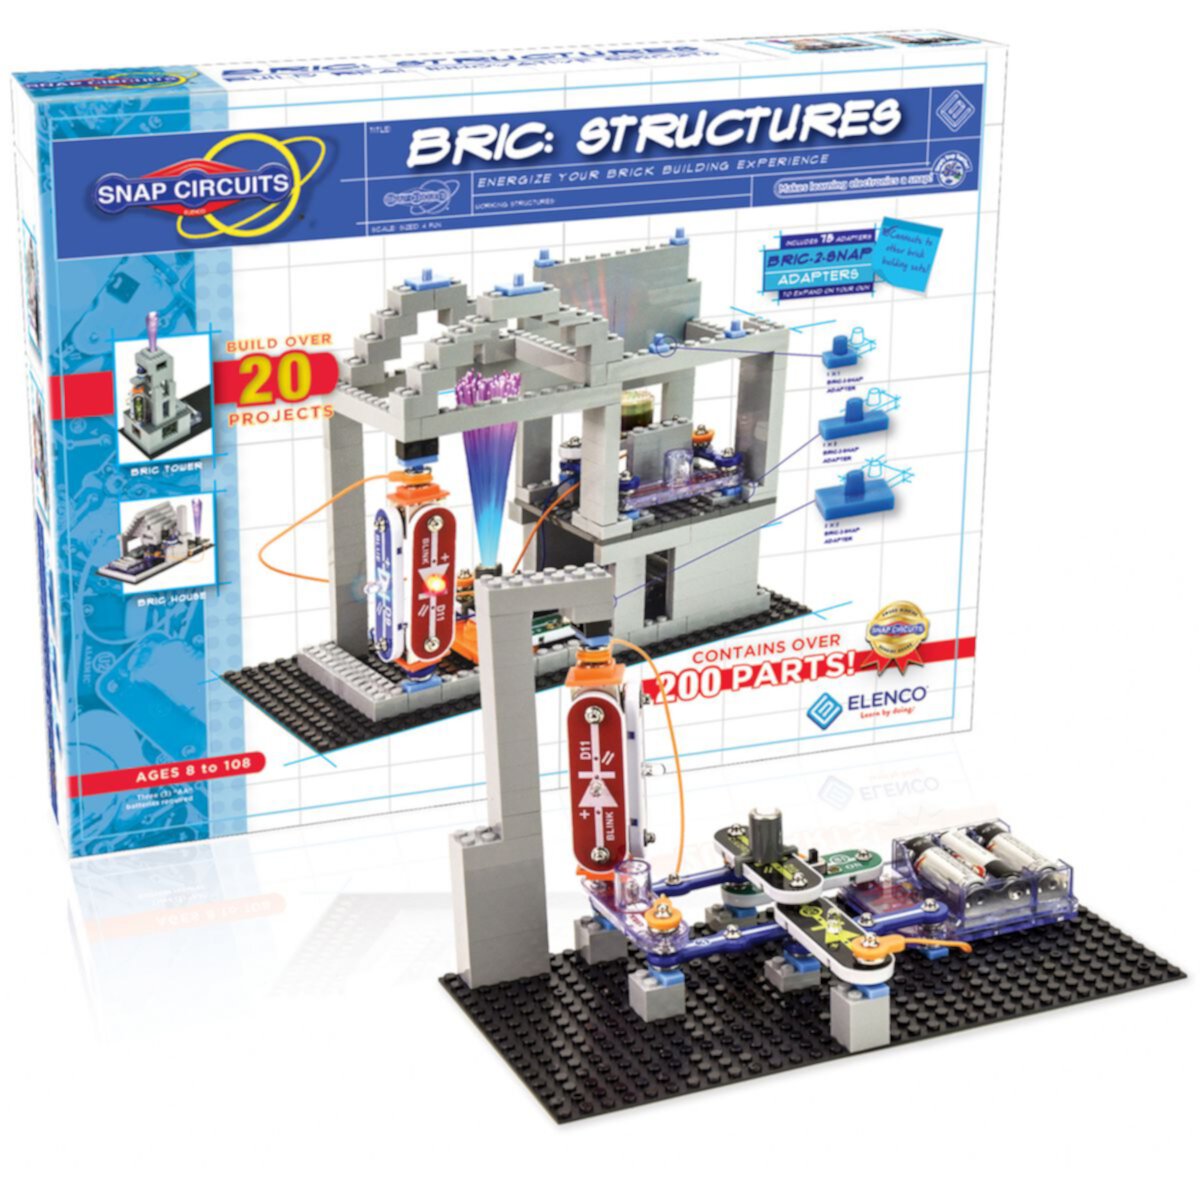 Строительный набор Elenco Snap Circuits BRIC Structures Elenco